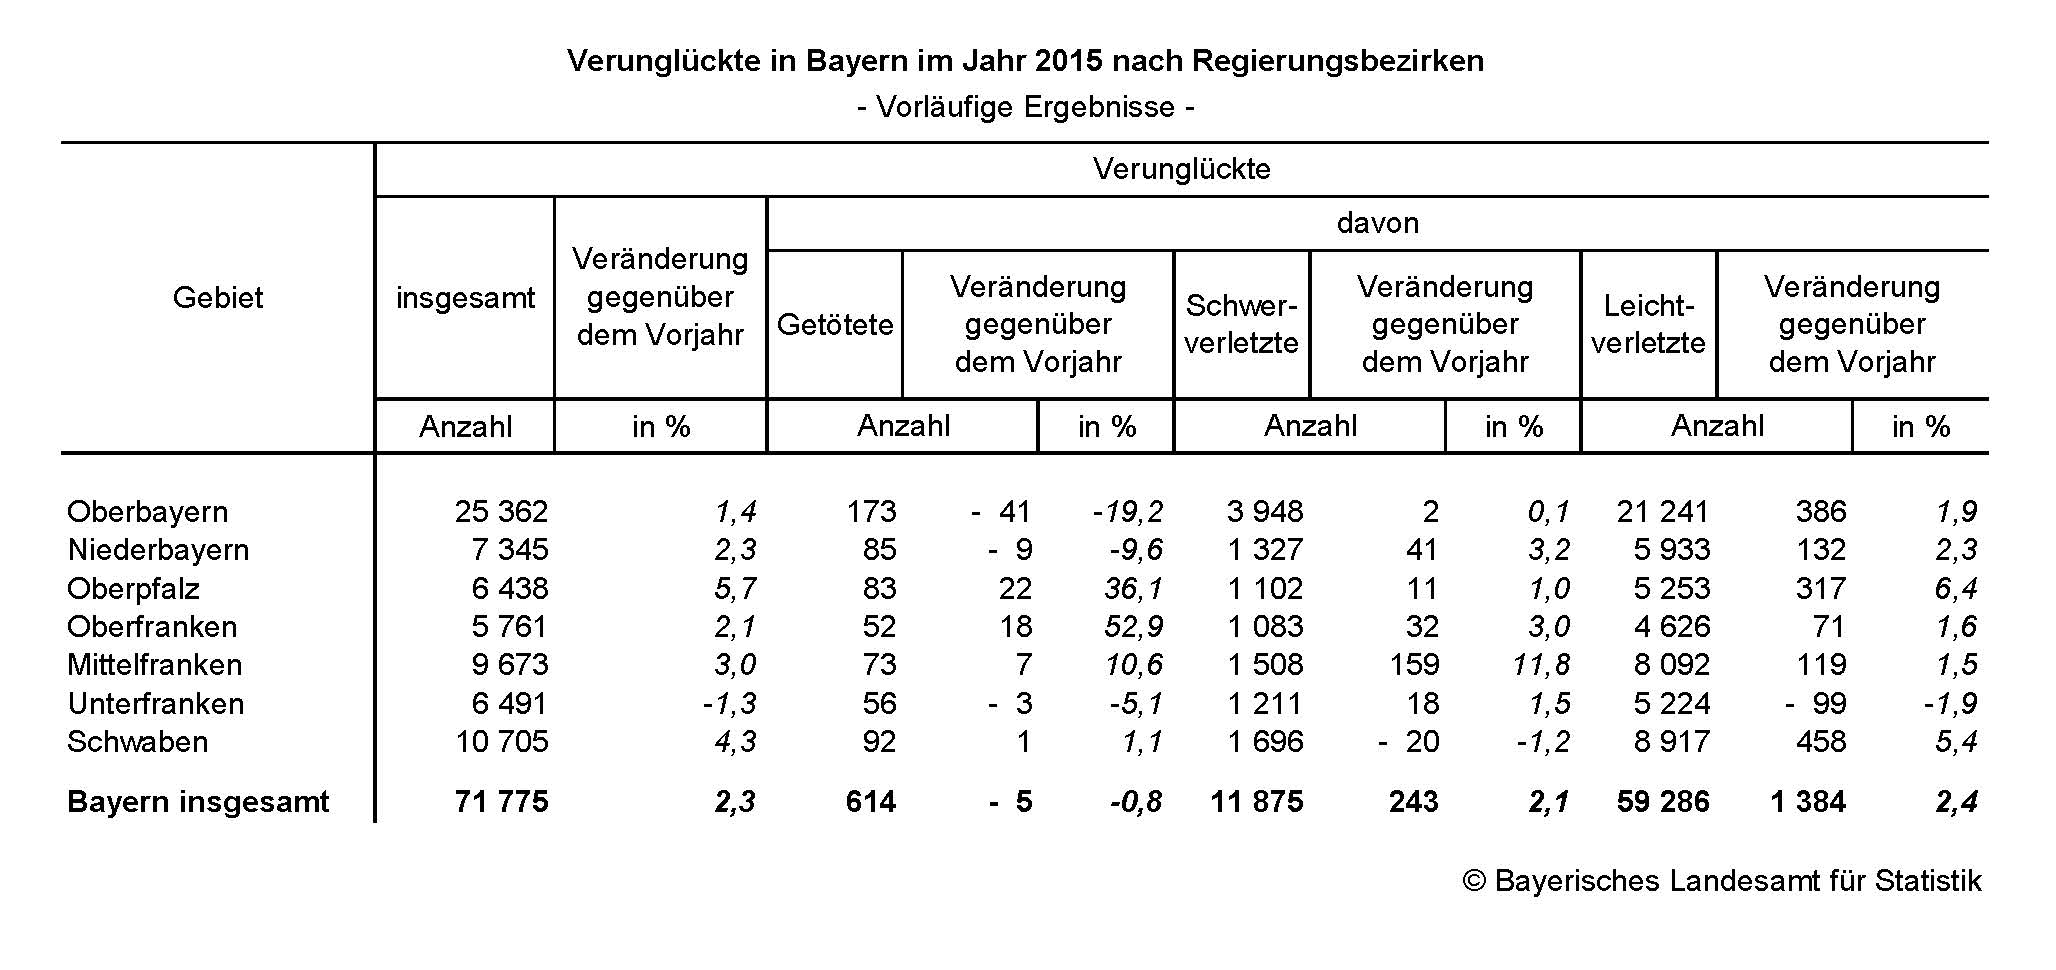 Verunglückte in Bayern im Jahr 2015 nach Regierungsbezirken